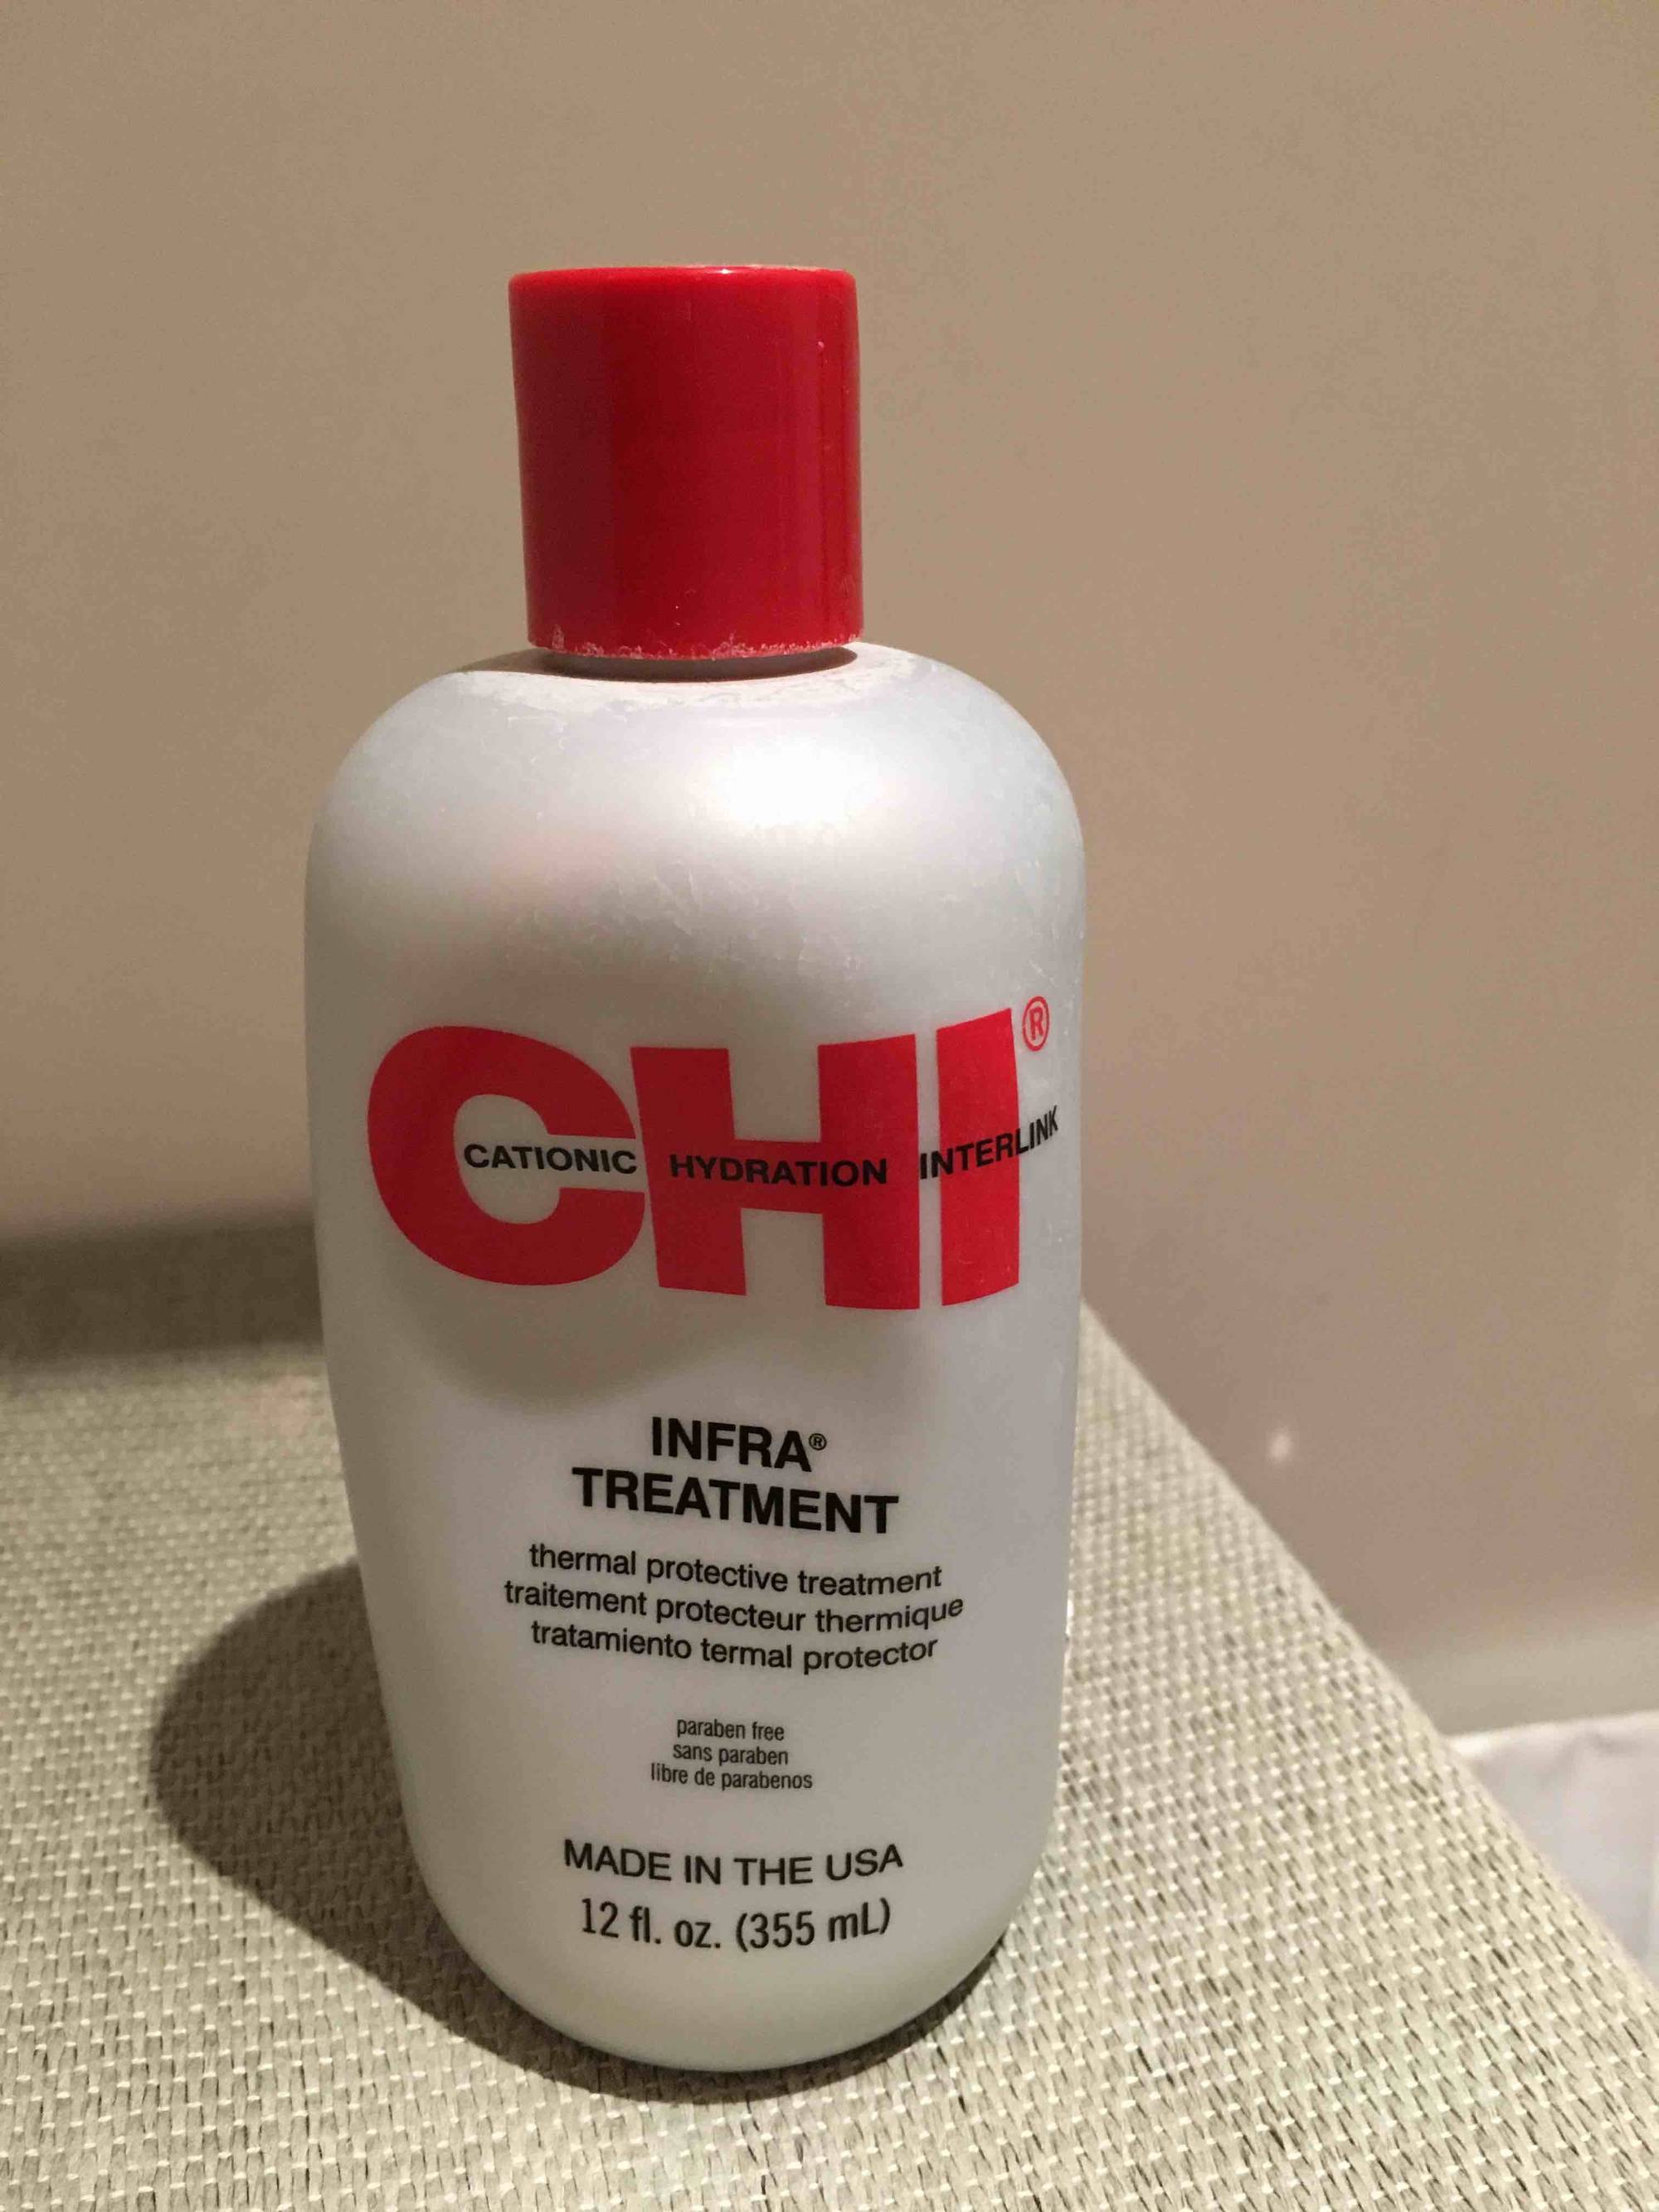 CHI - Infra treatment - Traitement protecteur thermique